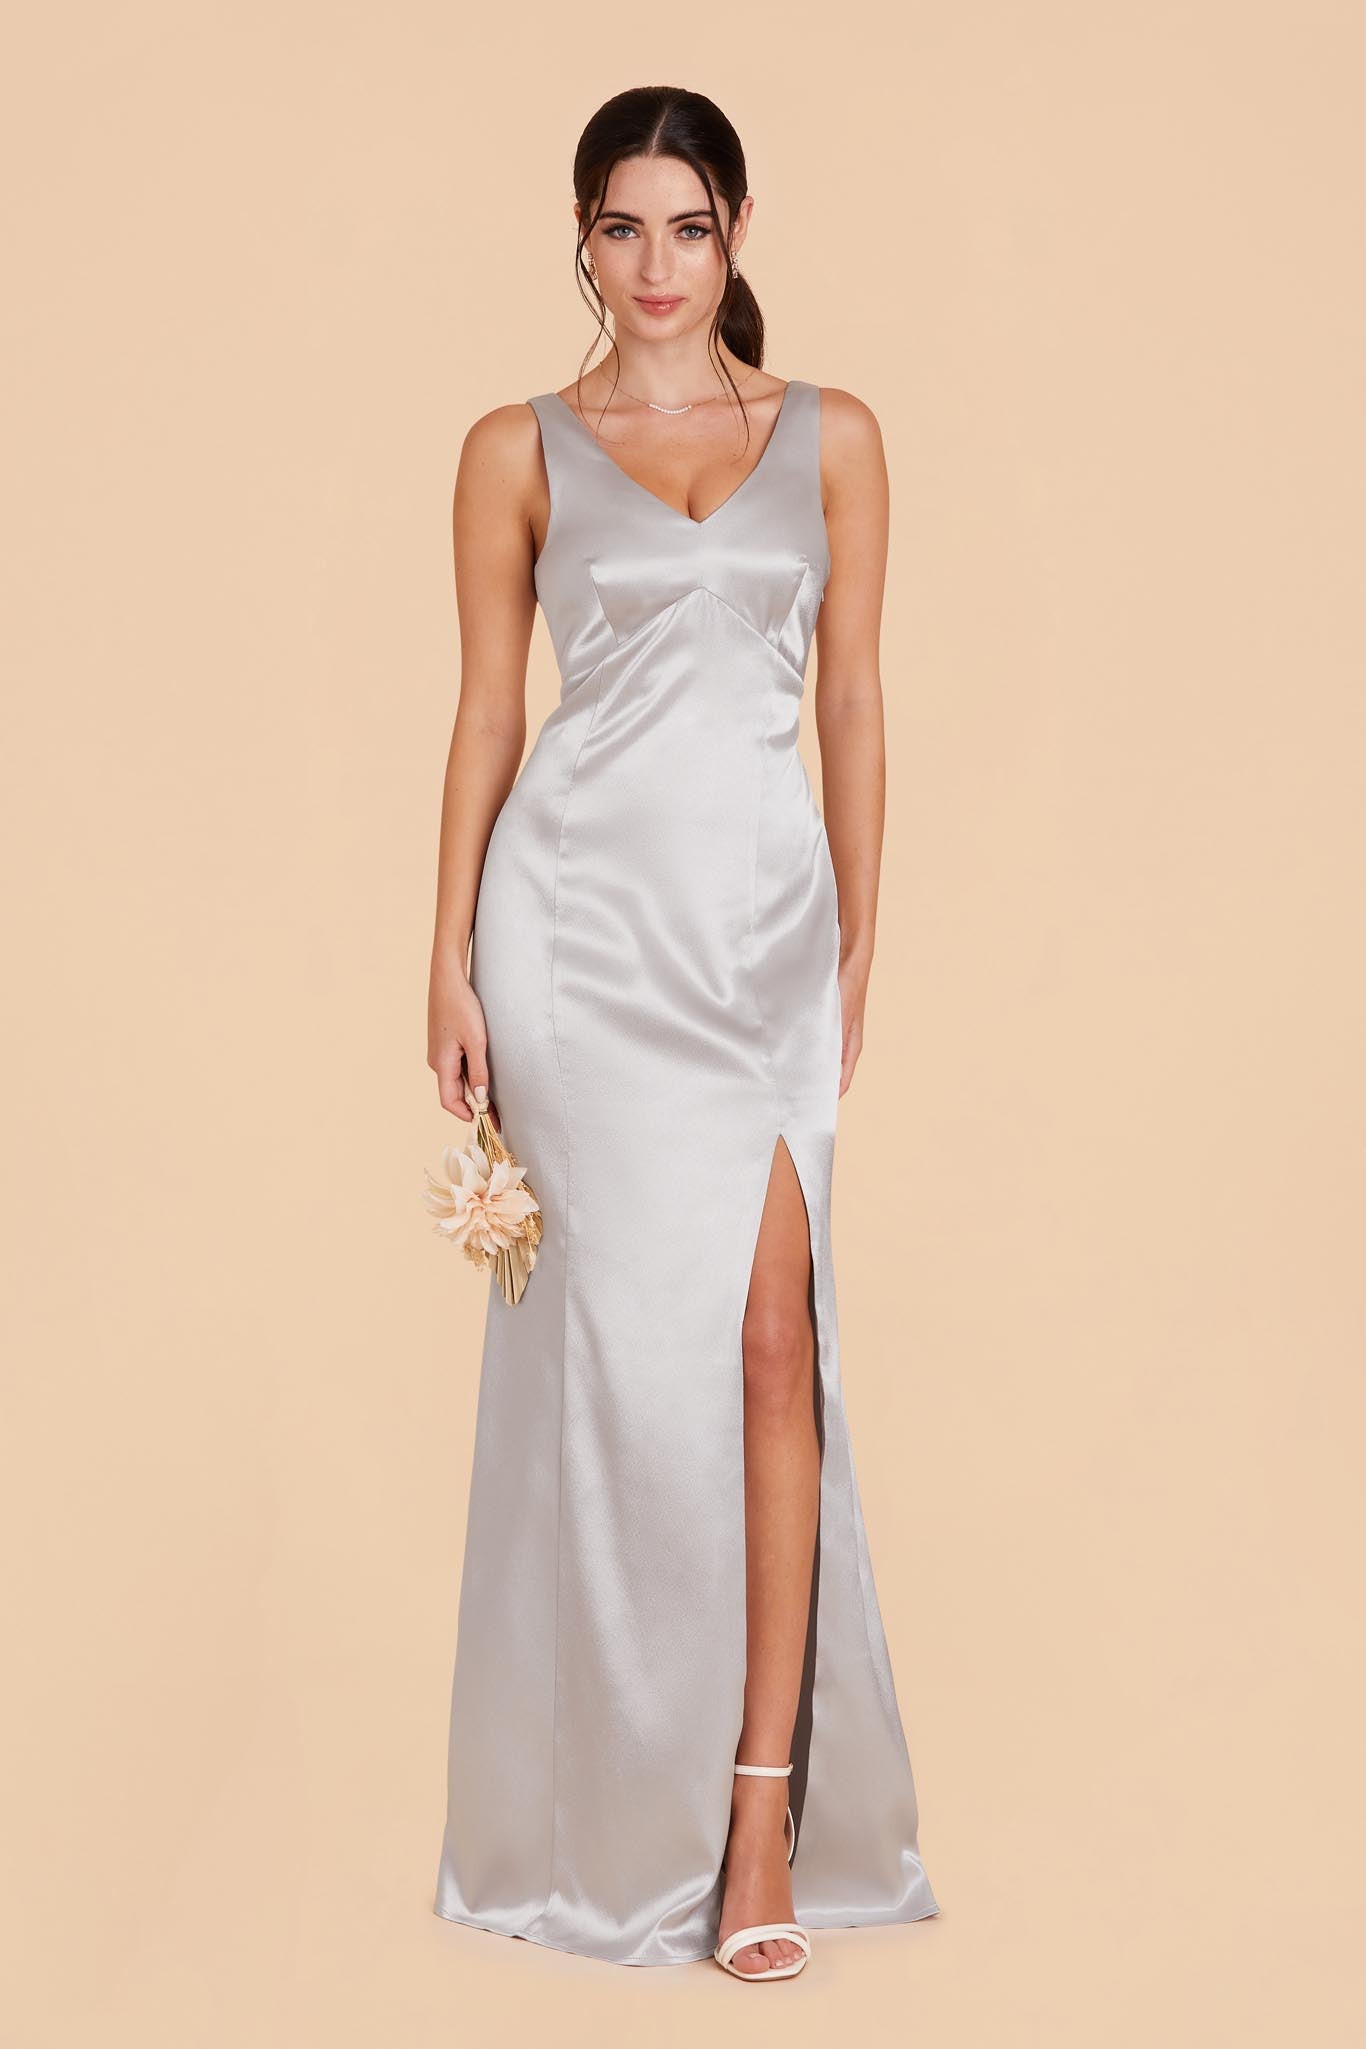 Platinum Gloria Satin Dress by Birdy Grey